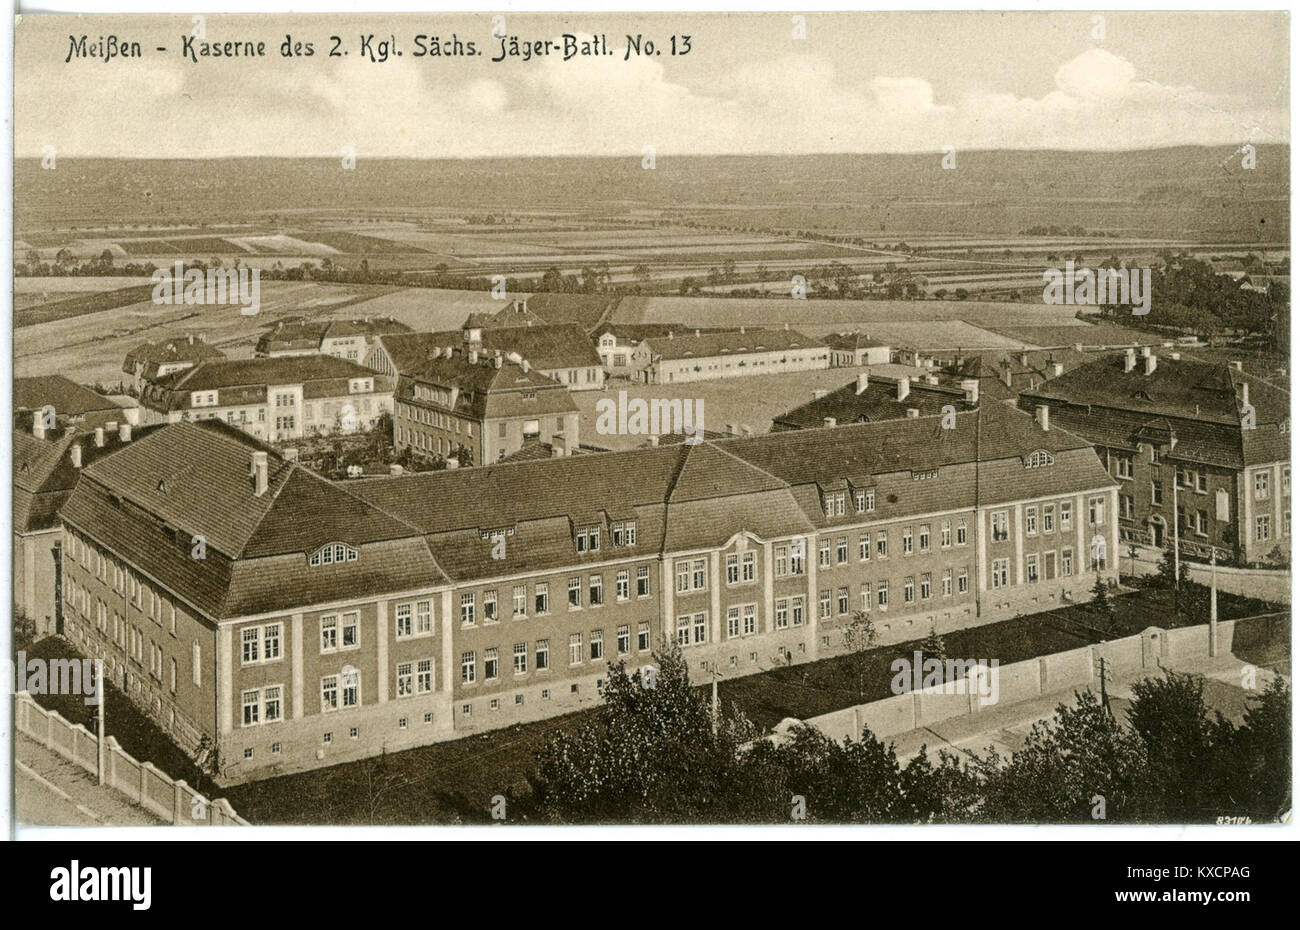 20361 - Meißen 1917-Kaserne des 2. Königlich Sächsischen Jäger-Bataillon Nr. 13 - Brück & Sohn Kunstverlag Stockfoto